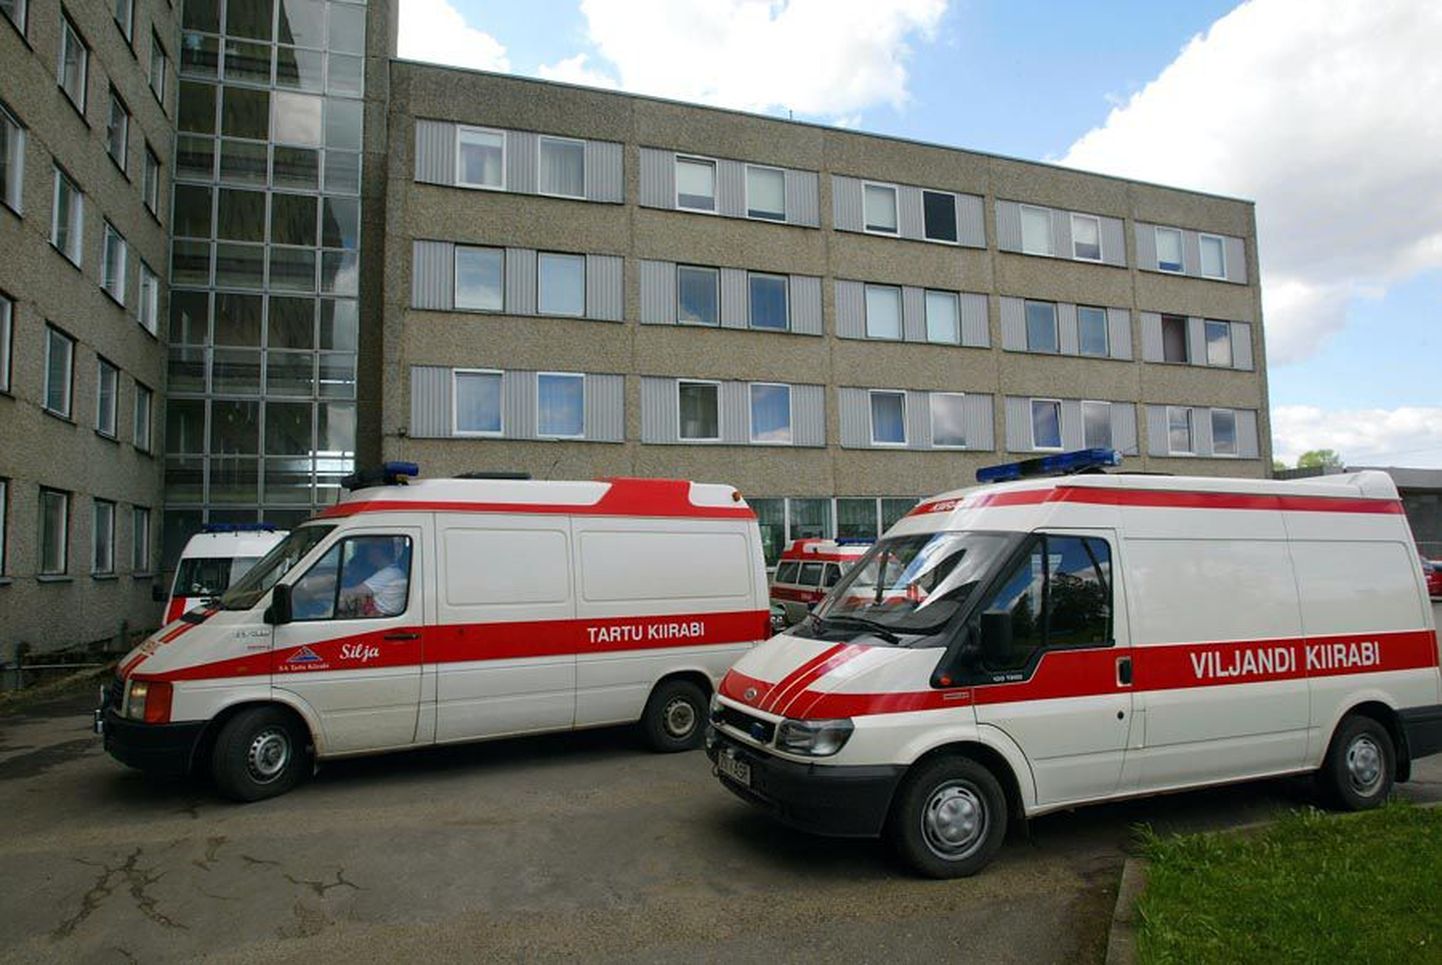 Esmaspäevast hakkab Viljandimaal kiirabiteenust pakkuma Tartu kiirabi, kuid sisuliselt jääb abivajajale kõik samaks. Muutub vaid kiri autodel ja need kolivad haigla juurest kesklinna uue veetorni juurde.